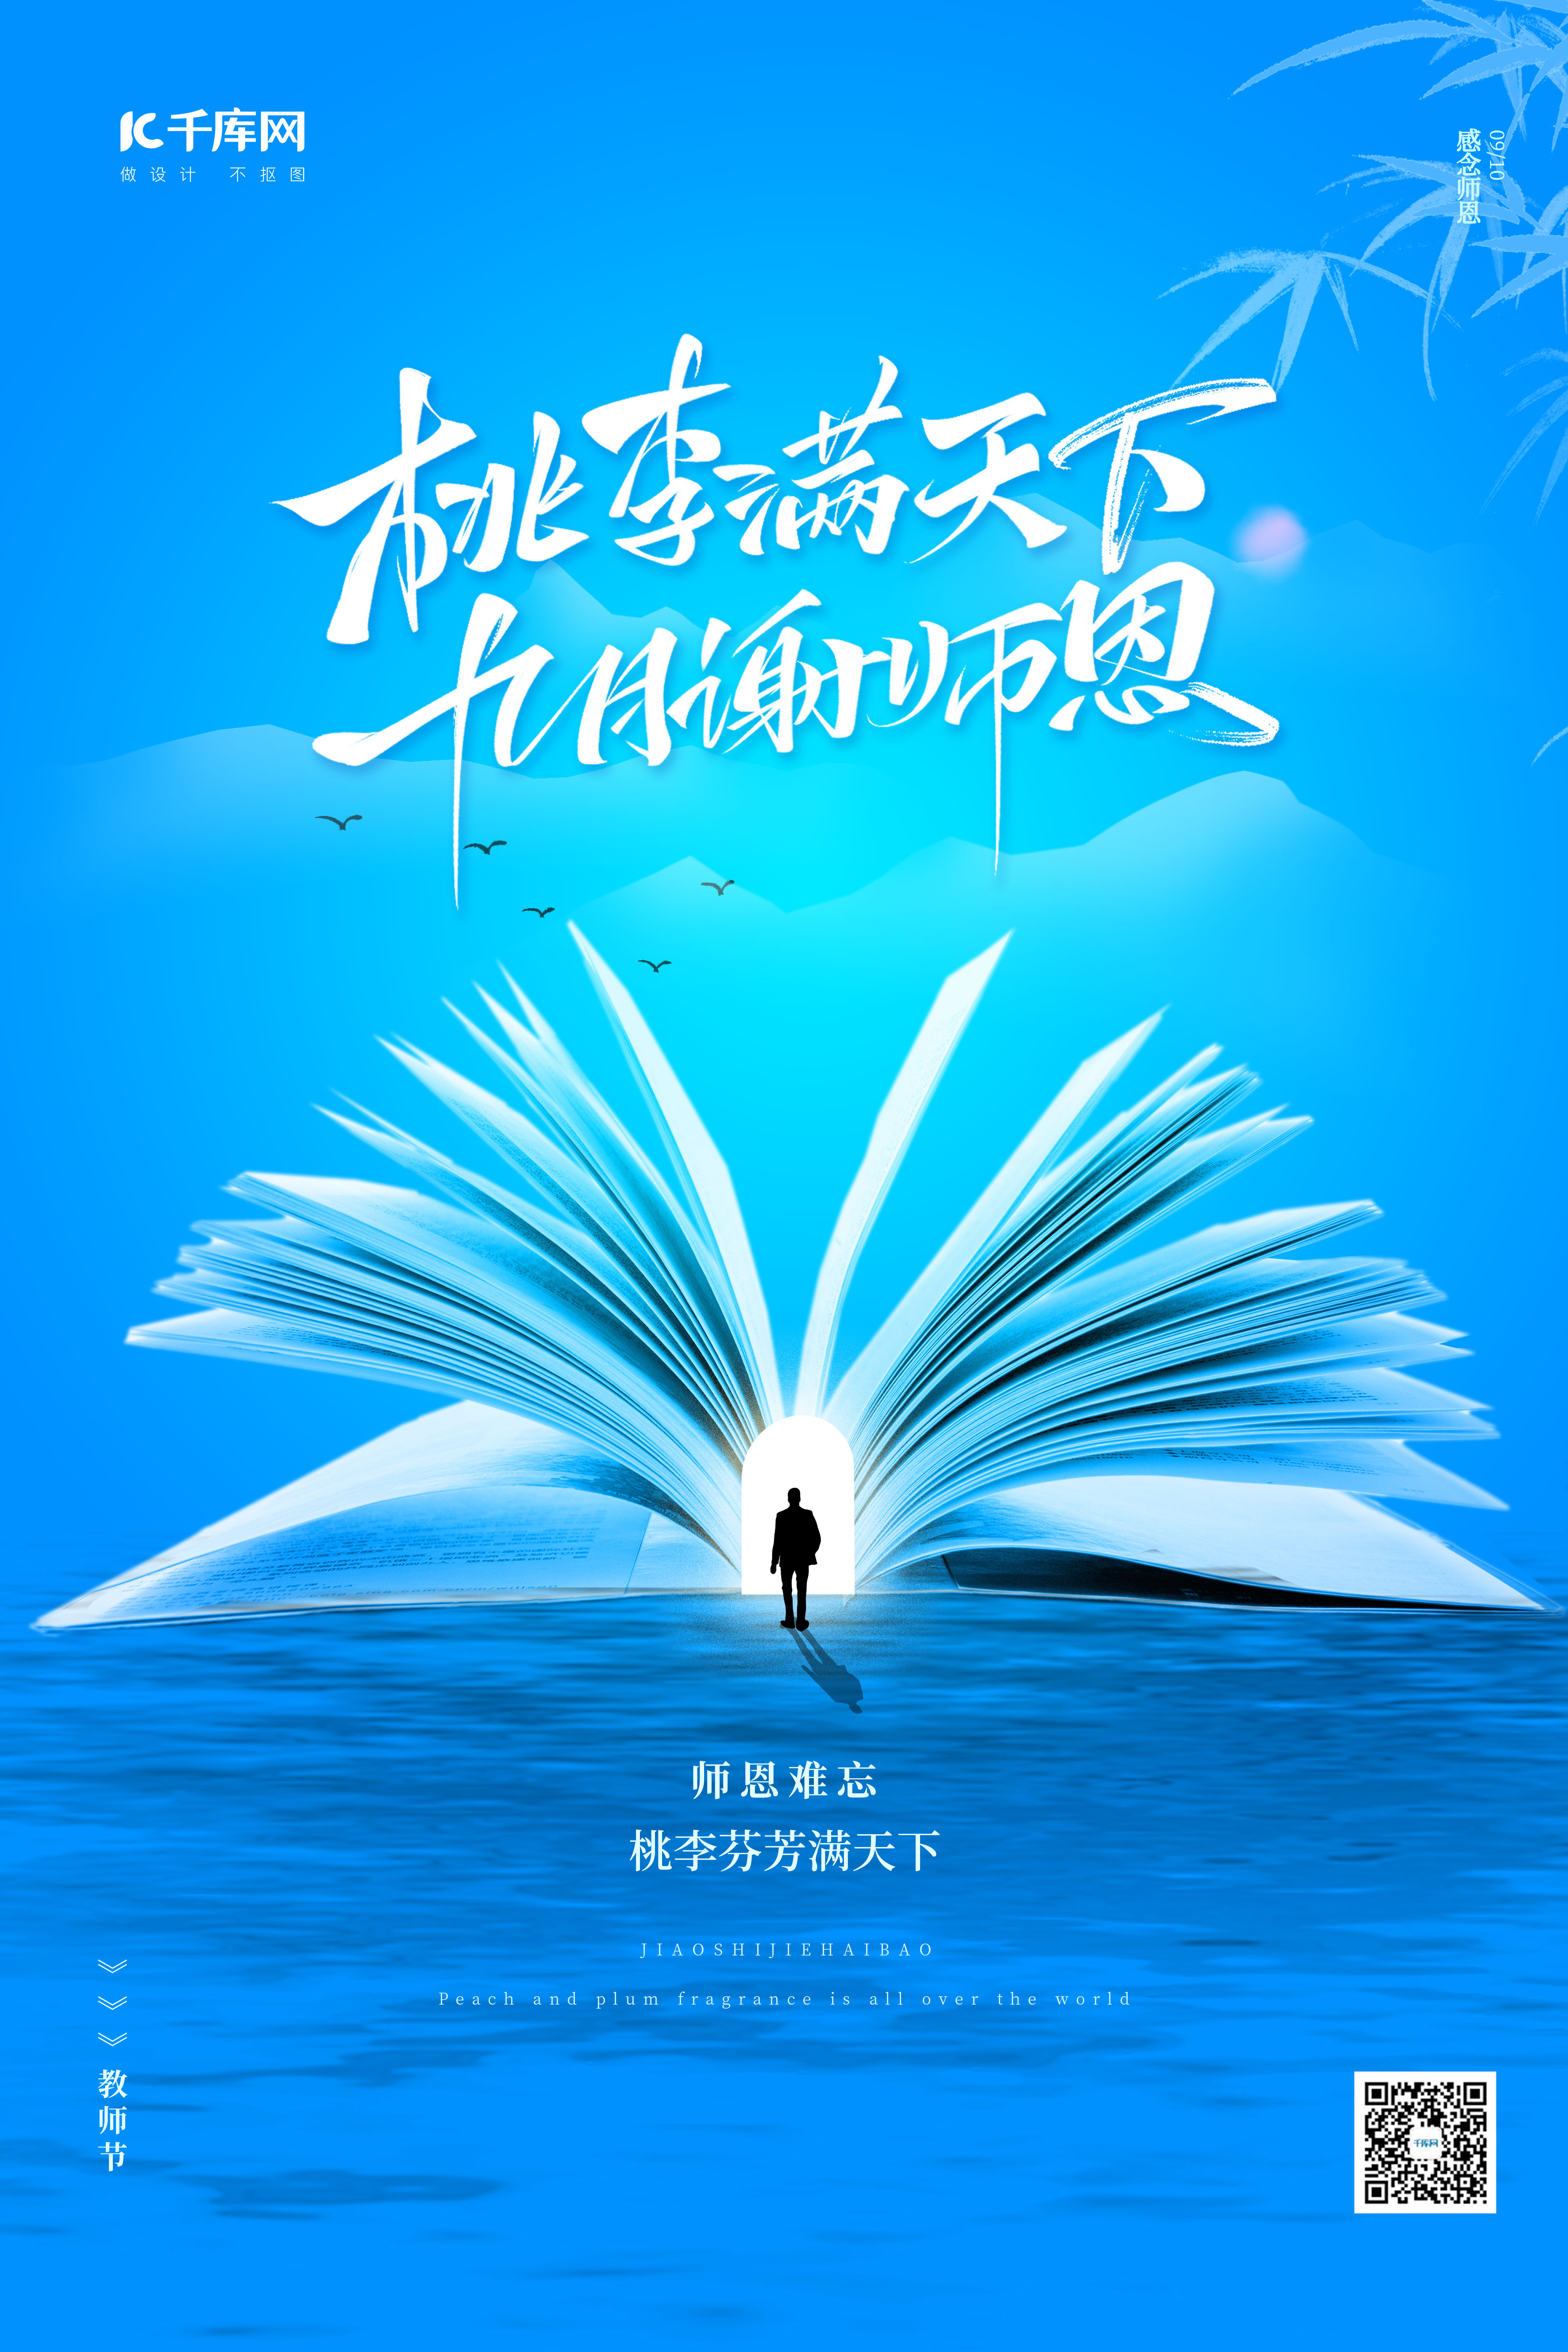 教师节快乐书本、教师、海洋、远山蓝色中国风海报图片